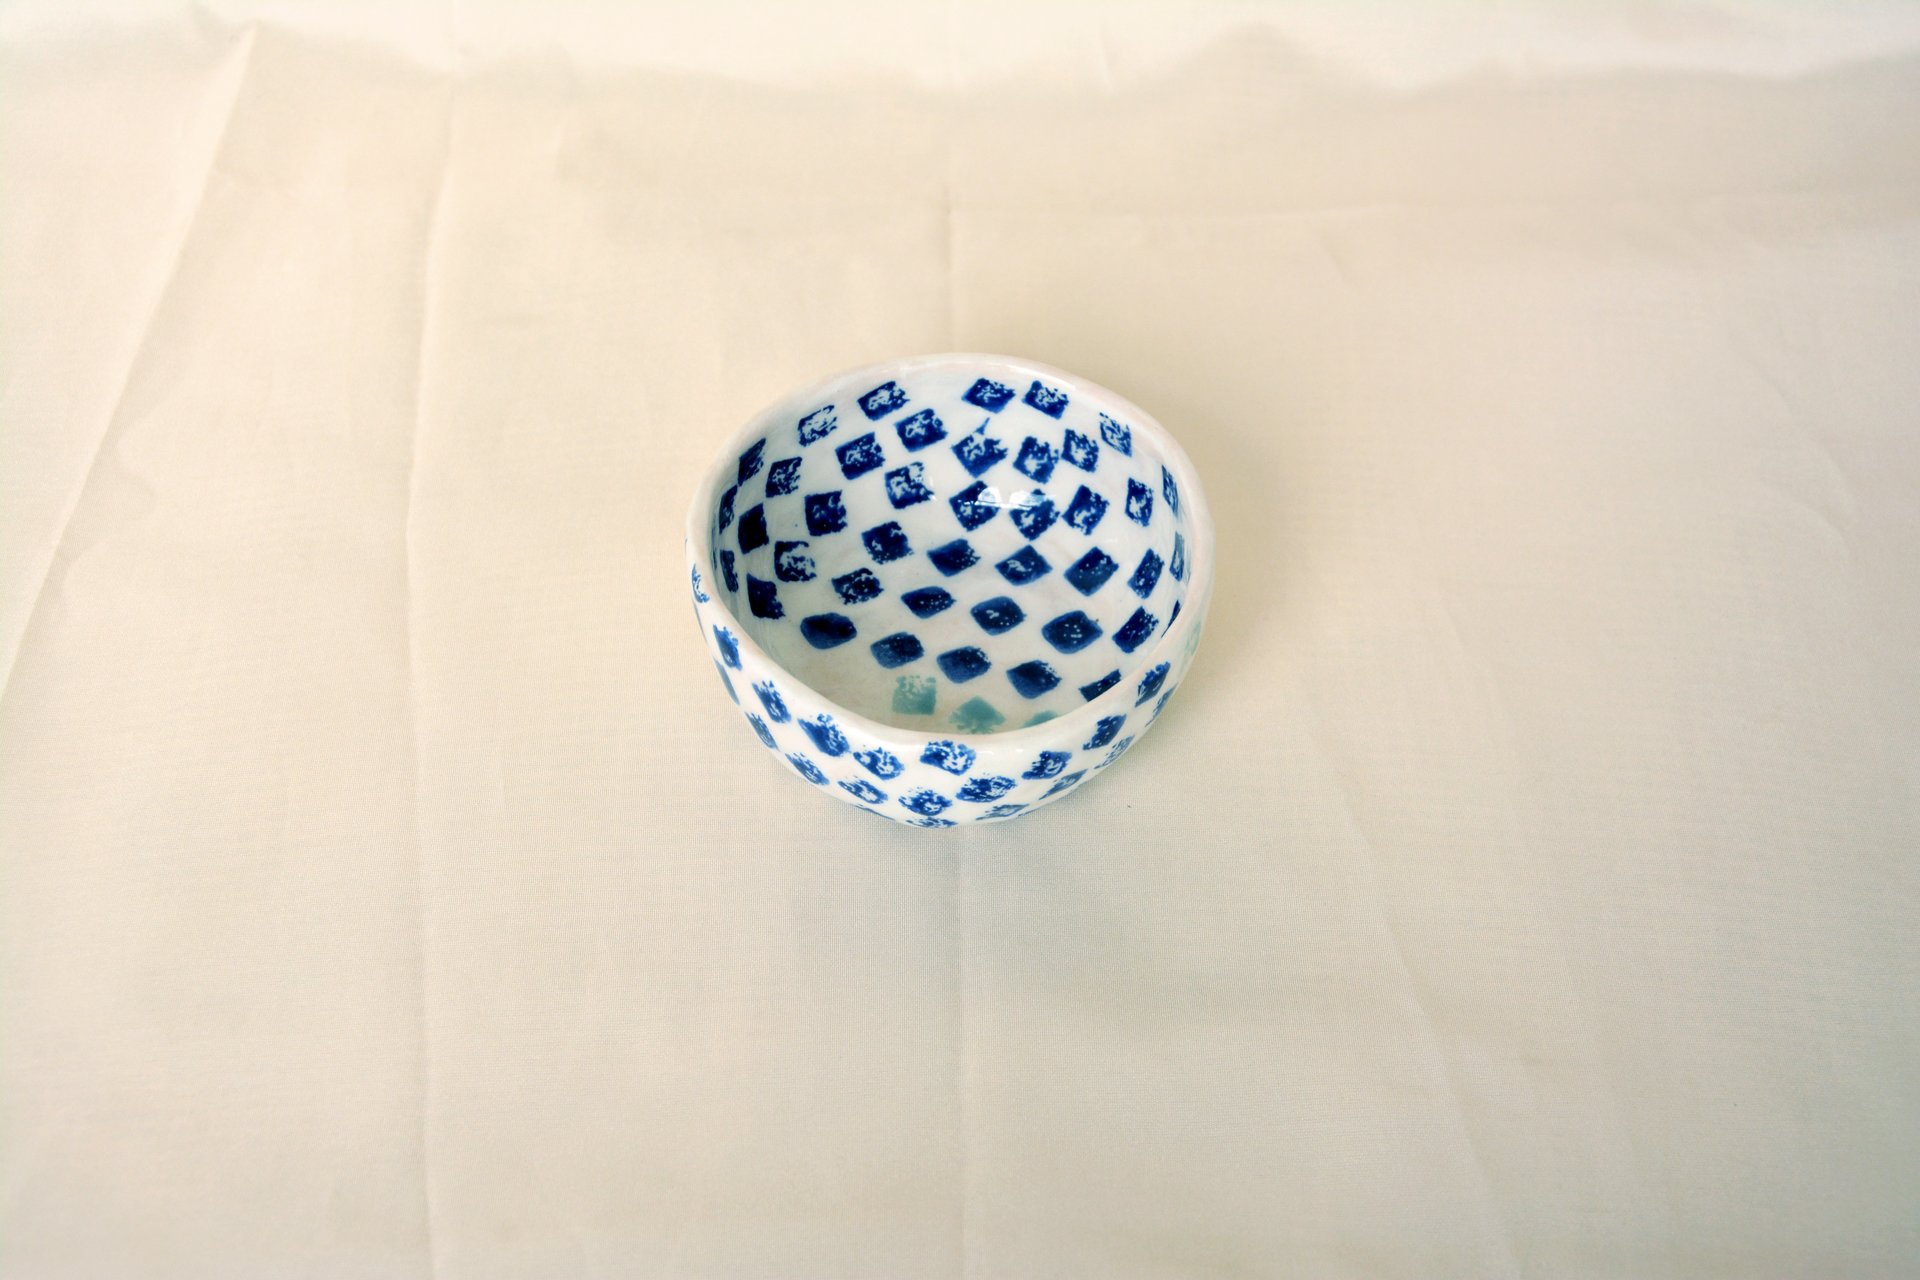 Синие квадратики на белом - Керамические тарелки, высота - 4 см, диаметр - 9.5 см, фото 2 из 4.